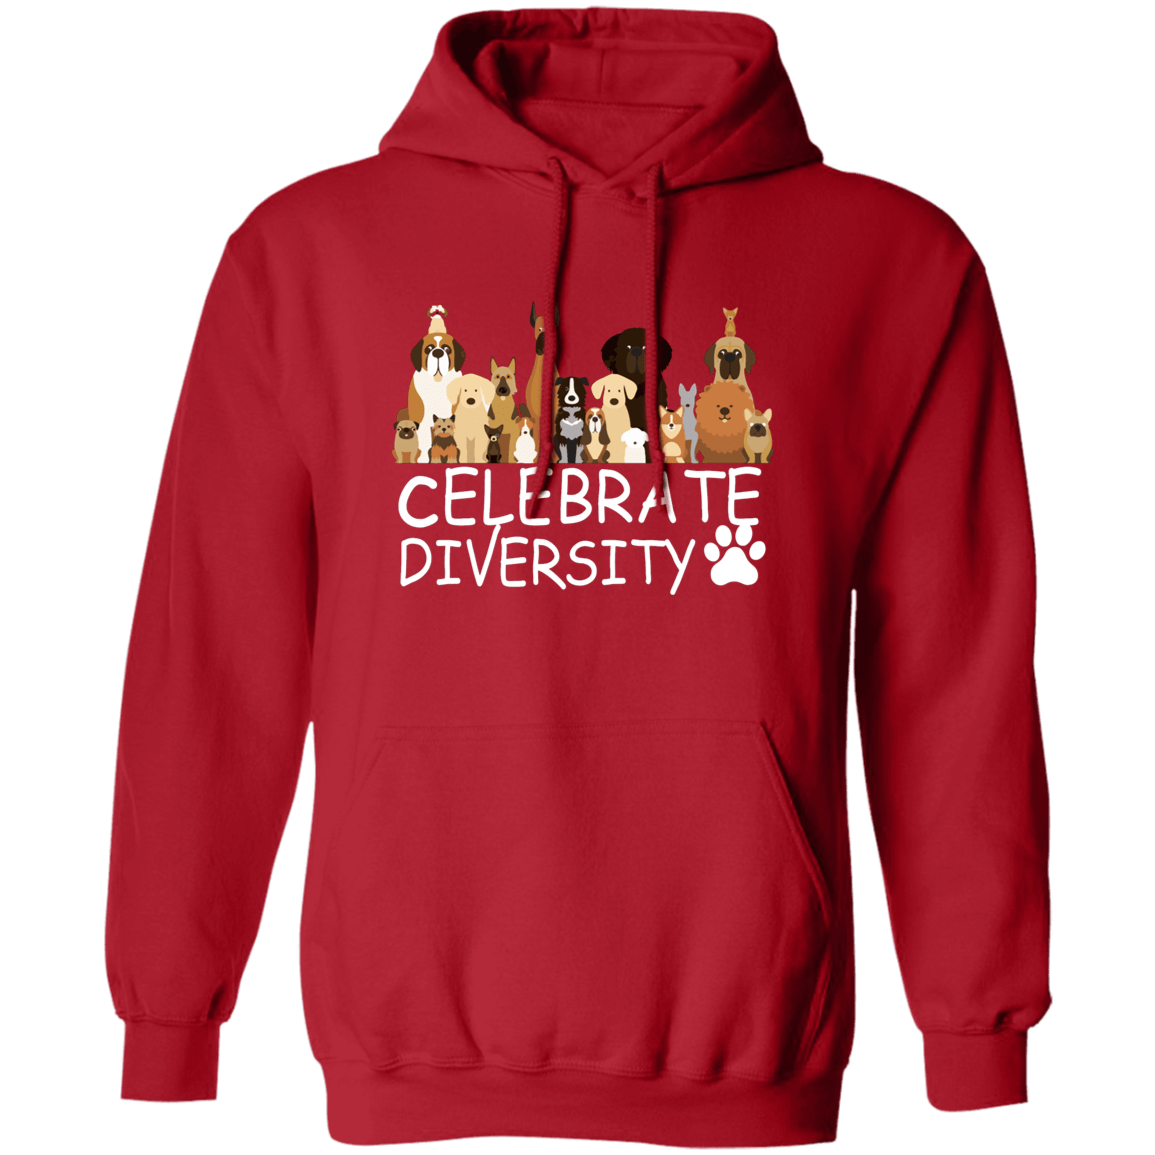 Celebrate Diversity - Hoodie.